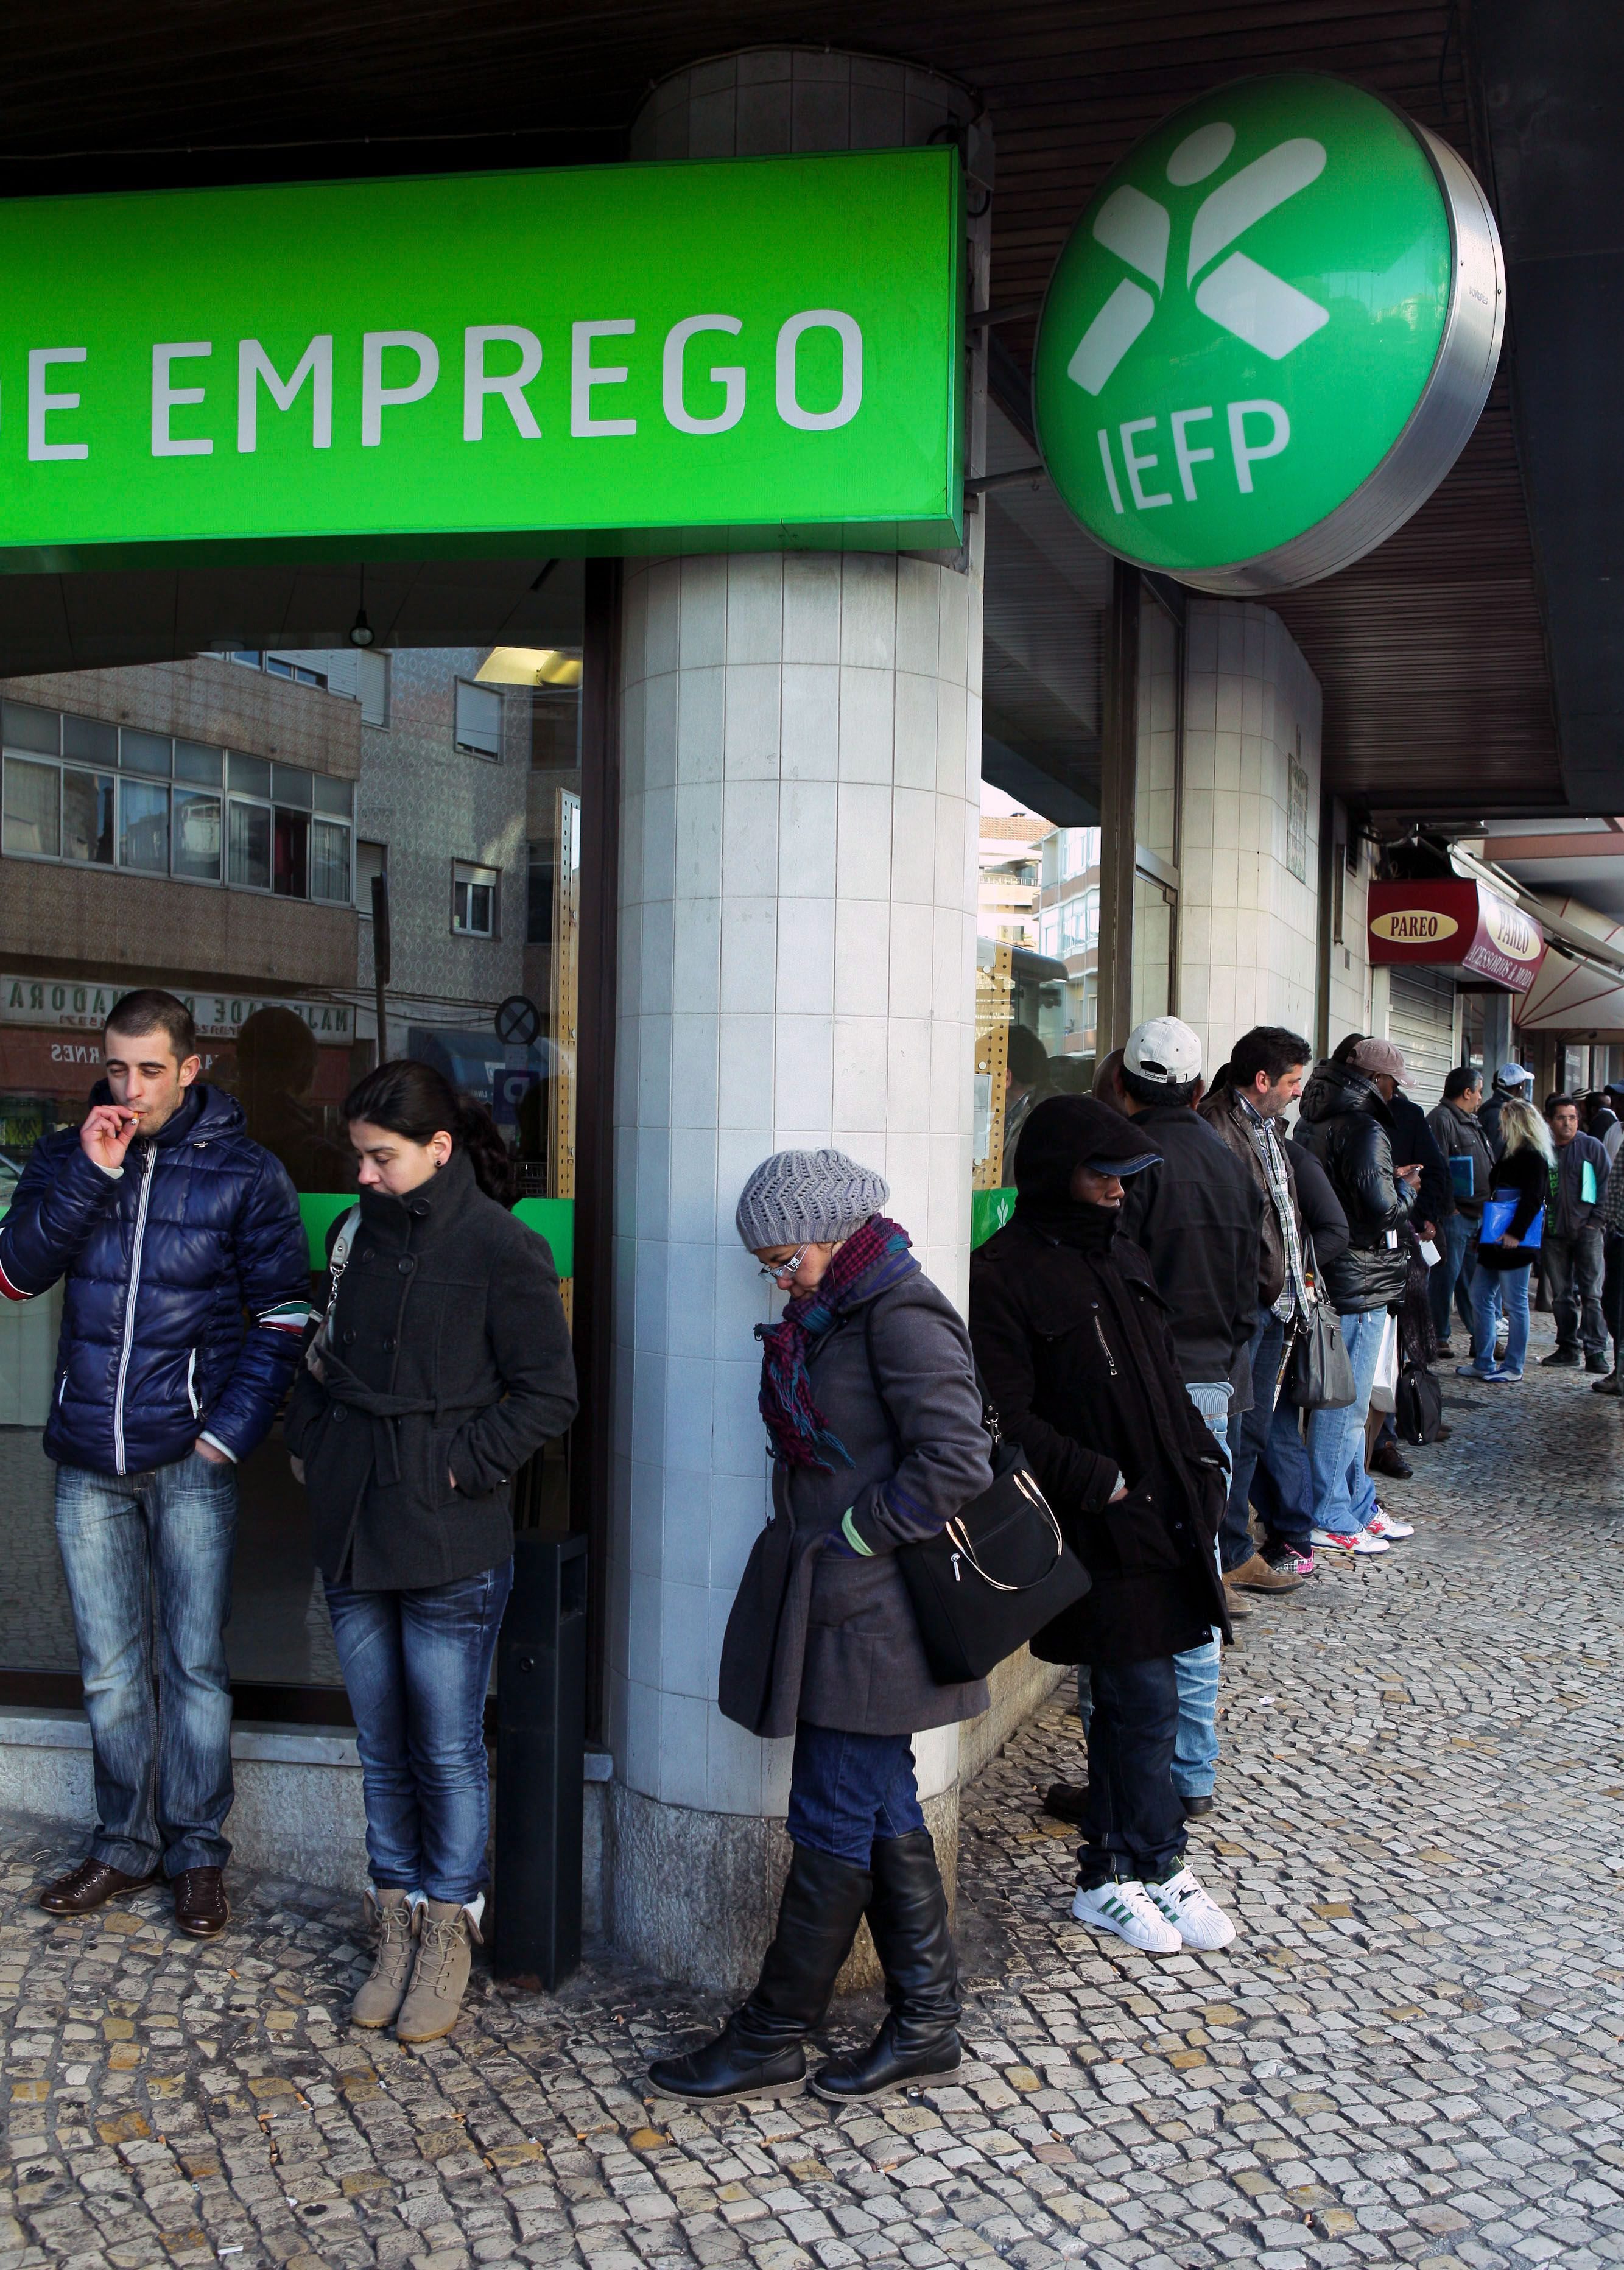 Πορτογαλία: Υποχρεωτική κοινωνική εργασία για 92 ευρώ το μήνα